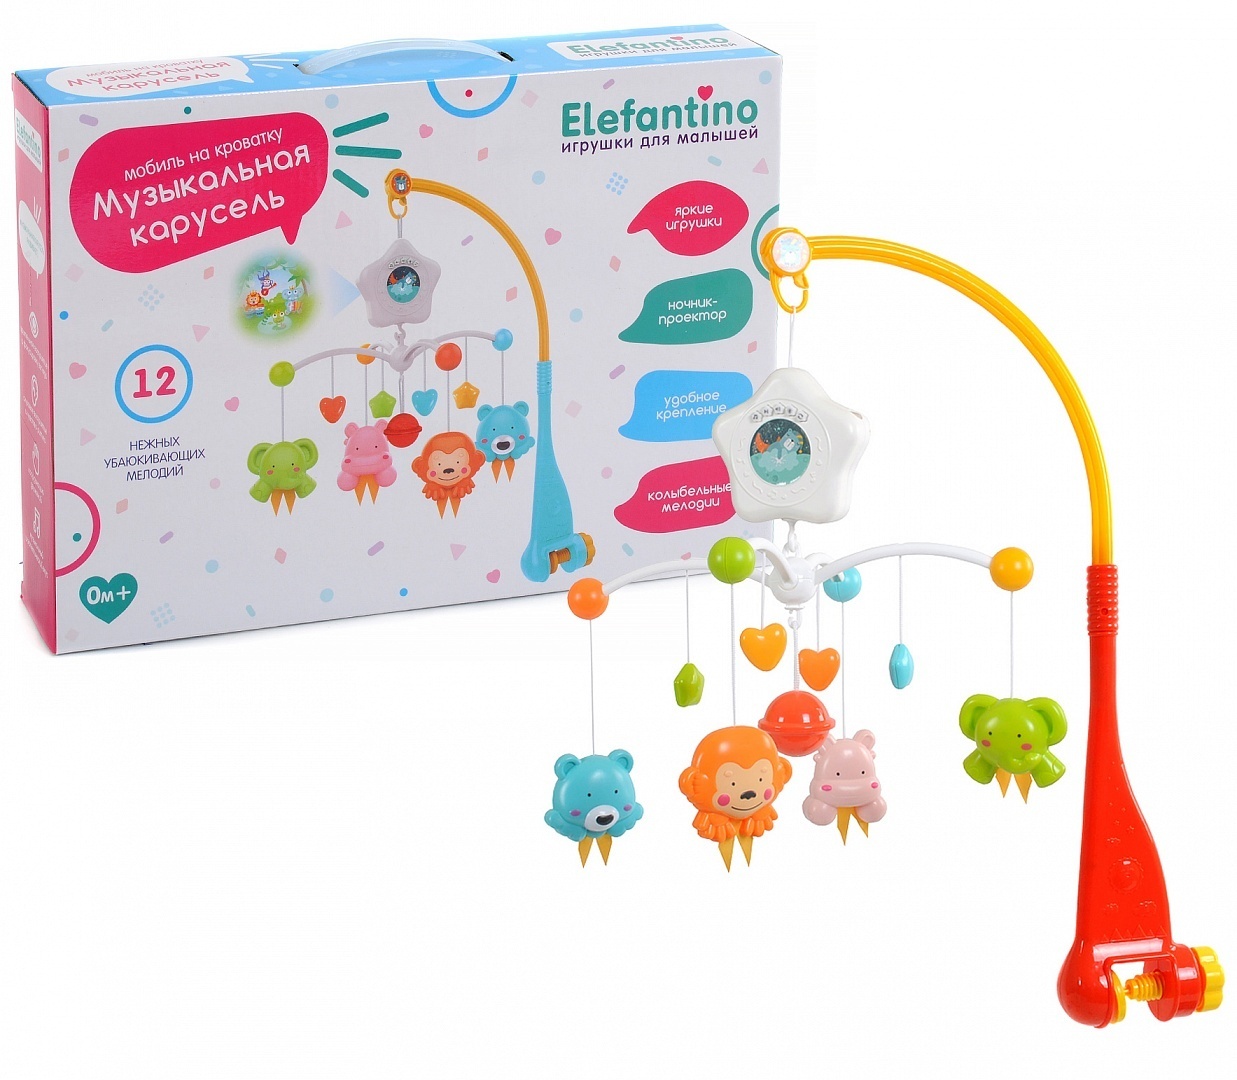 фото Игрушка elefantino с проектором, 12 мелодий, 4 ярких вращения игрушки, красный, it104344